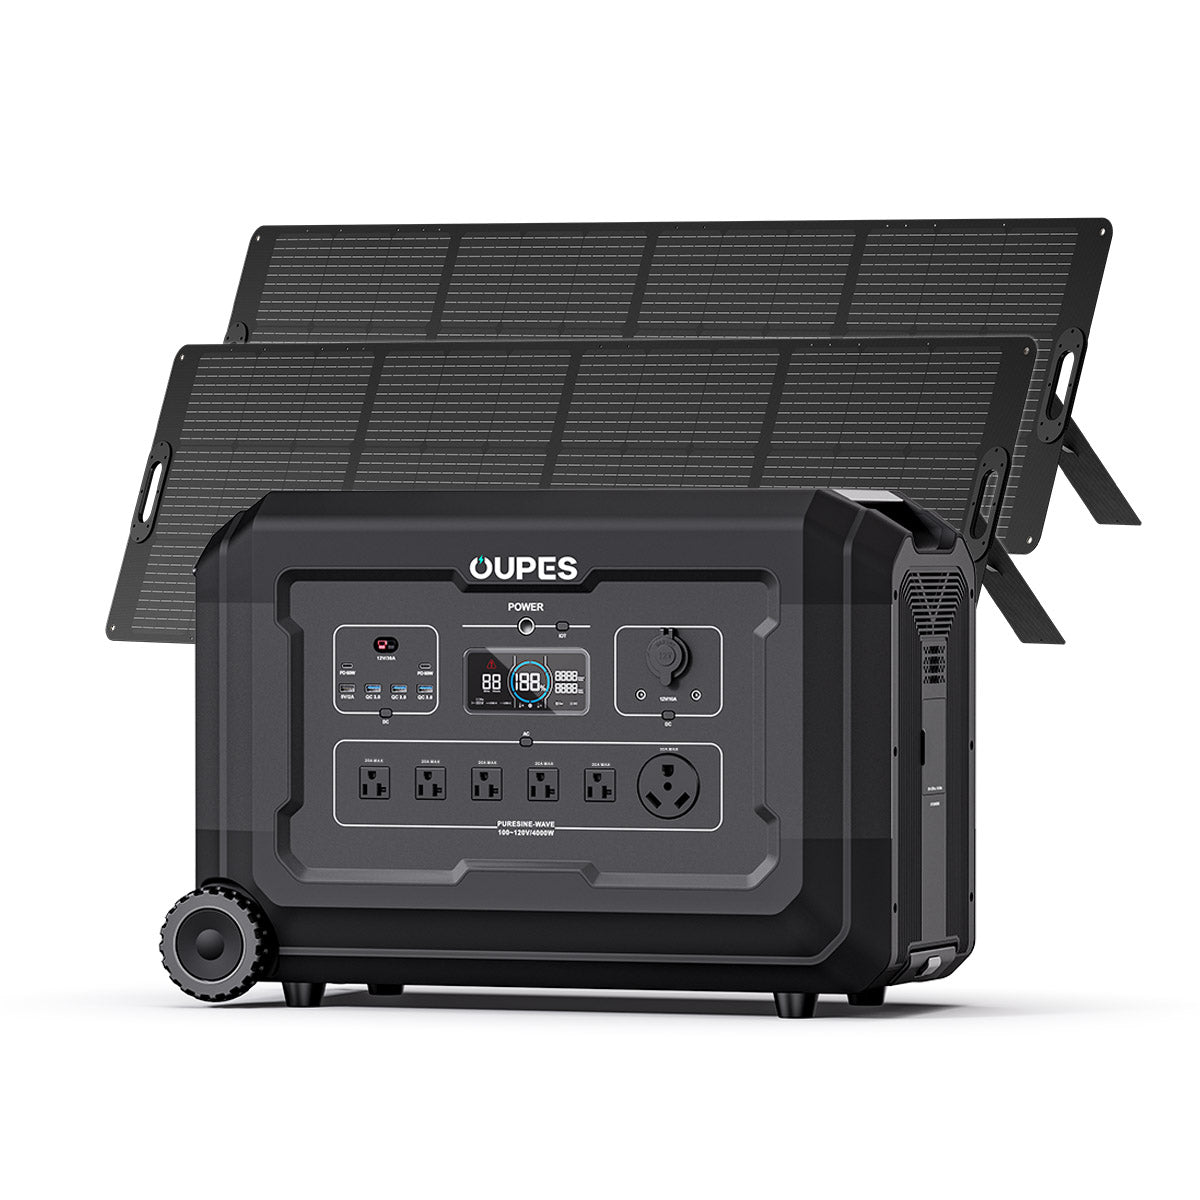 Mega 5 + 2*240W Solar Panel | Solar Generator Kit